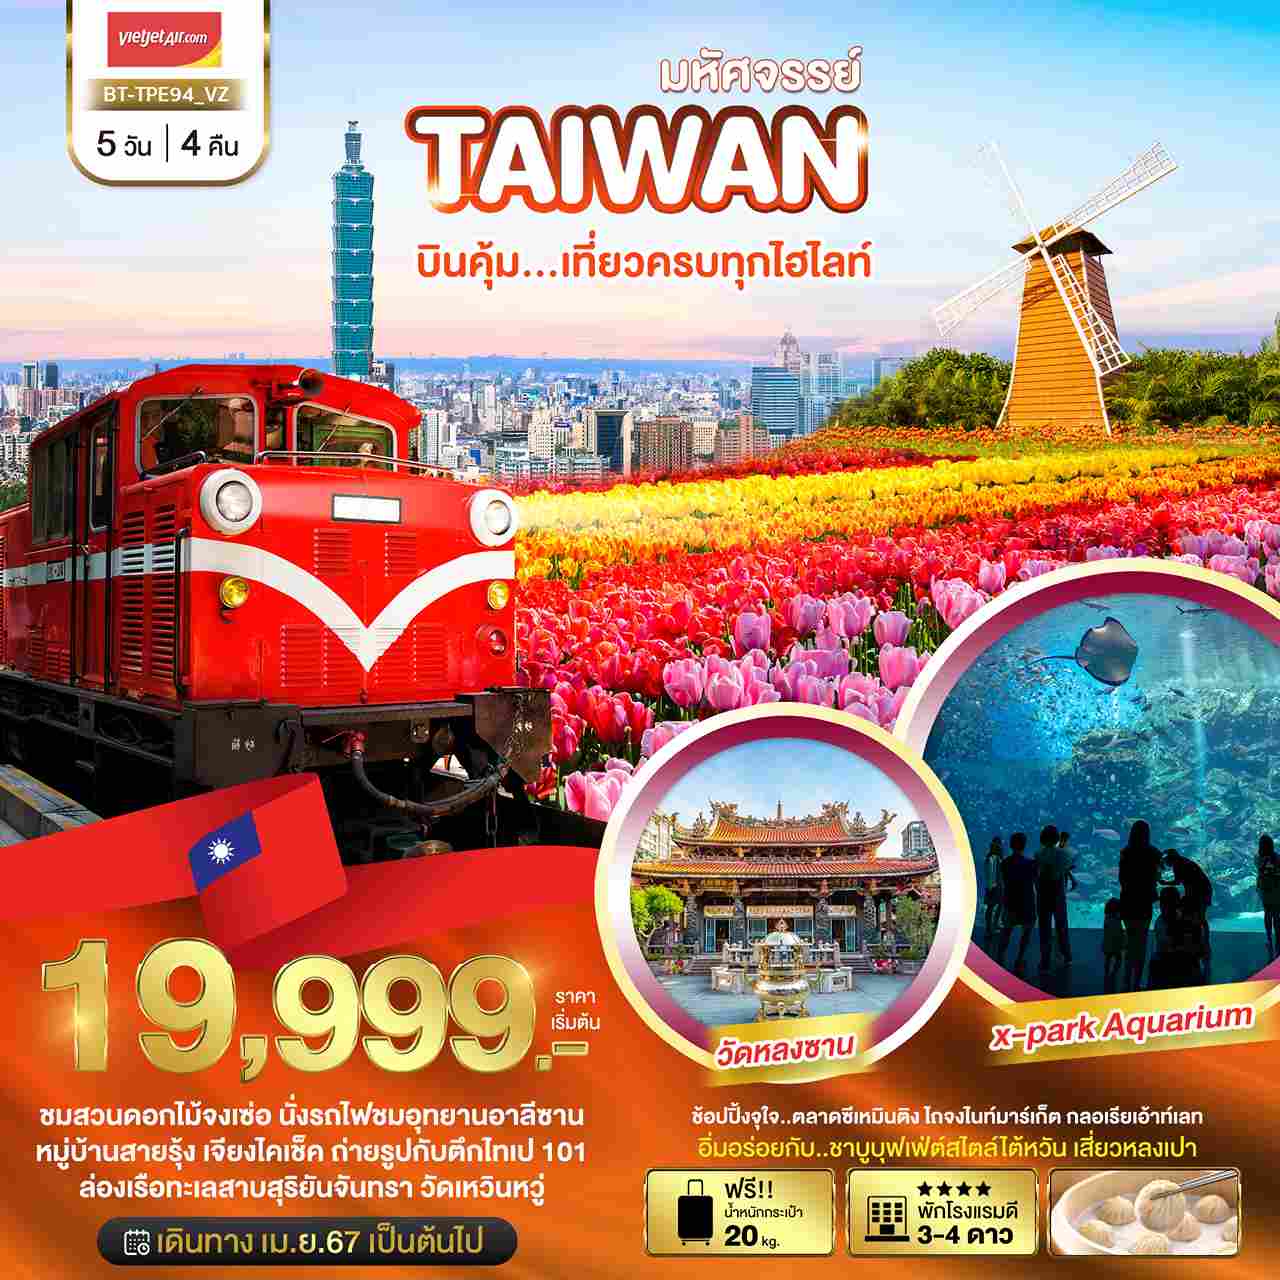 ทัวร์ไต้หวัน ATW245-14 มหัศจรรย์ TAIWAN บินคุ้ม ชมสวนดอกไม้จงเช่อ TPE94 (260667)